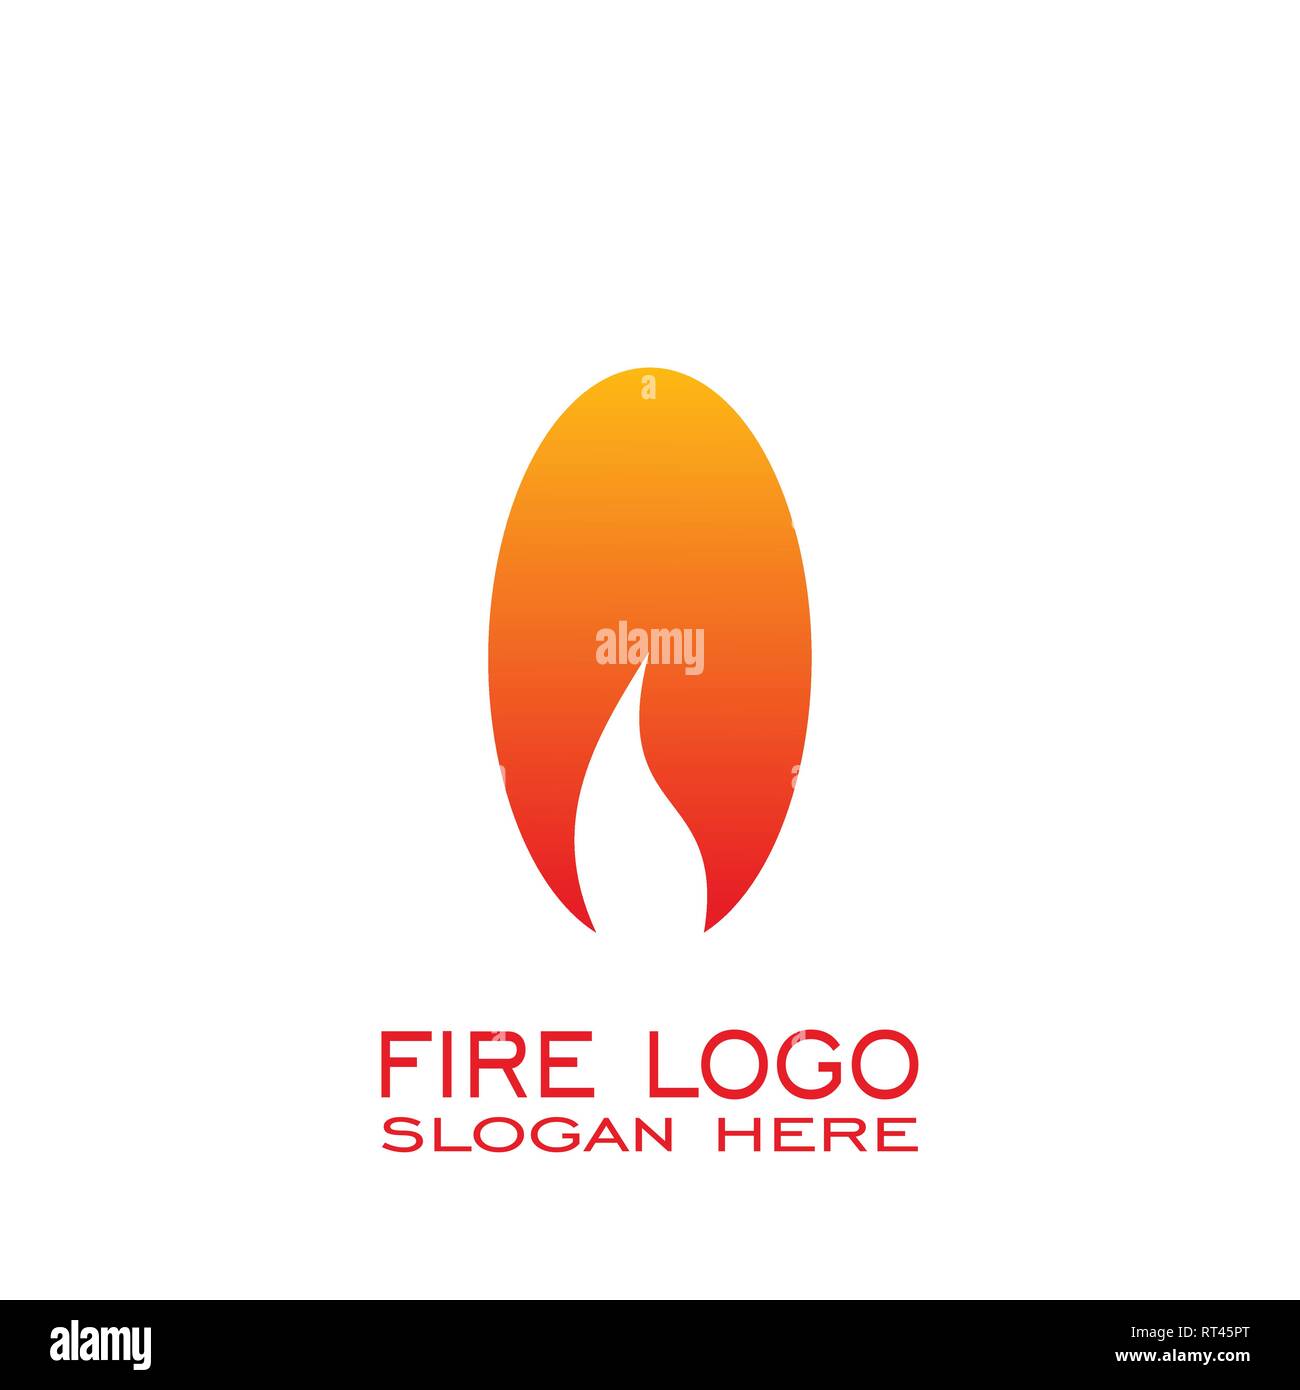 Fire logo design, simple fire logo. Stock Vector